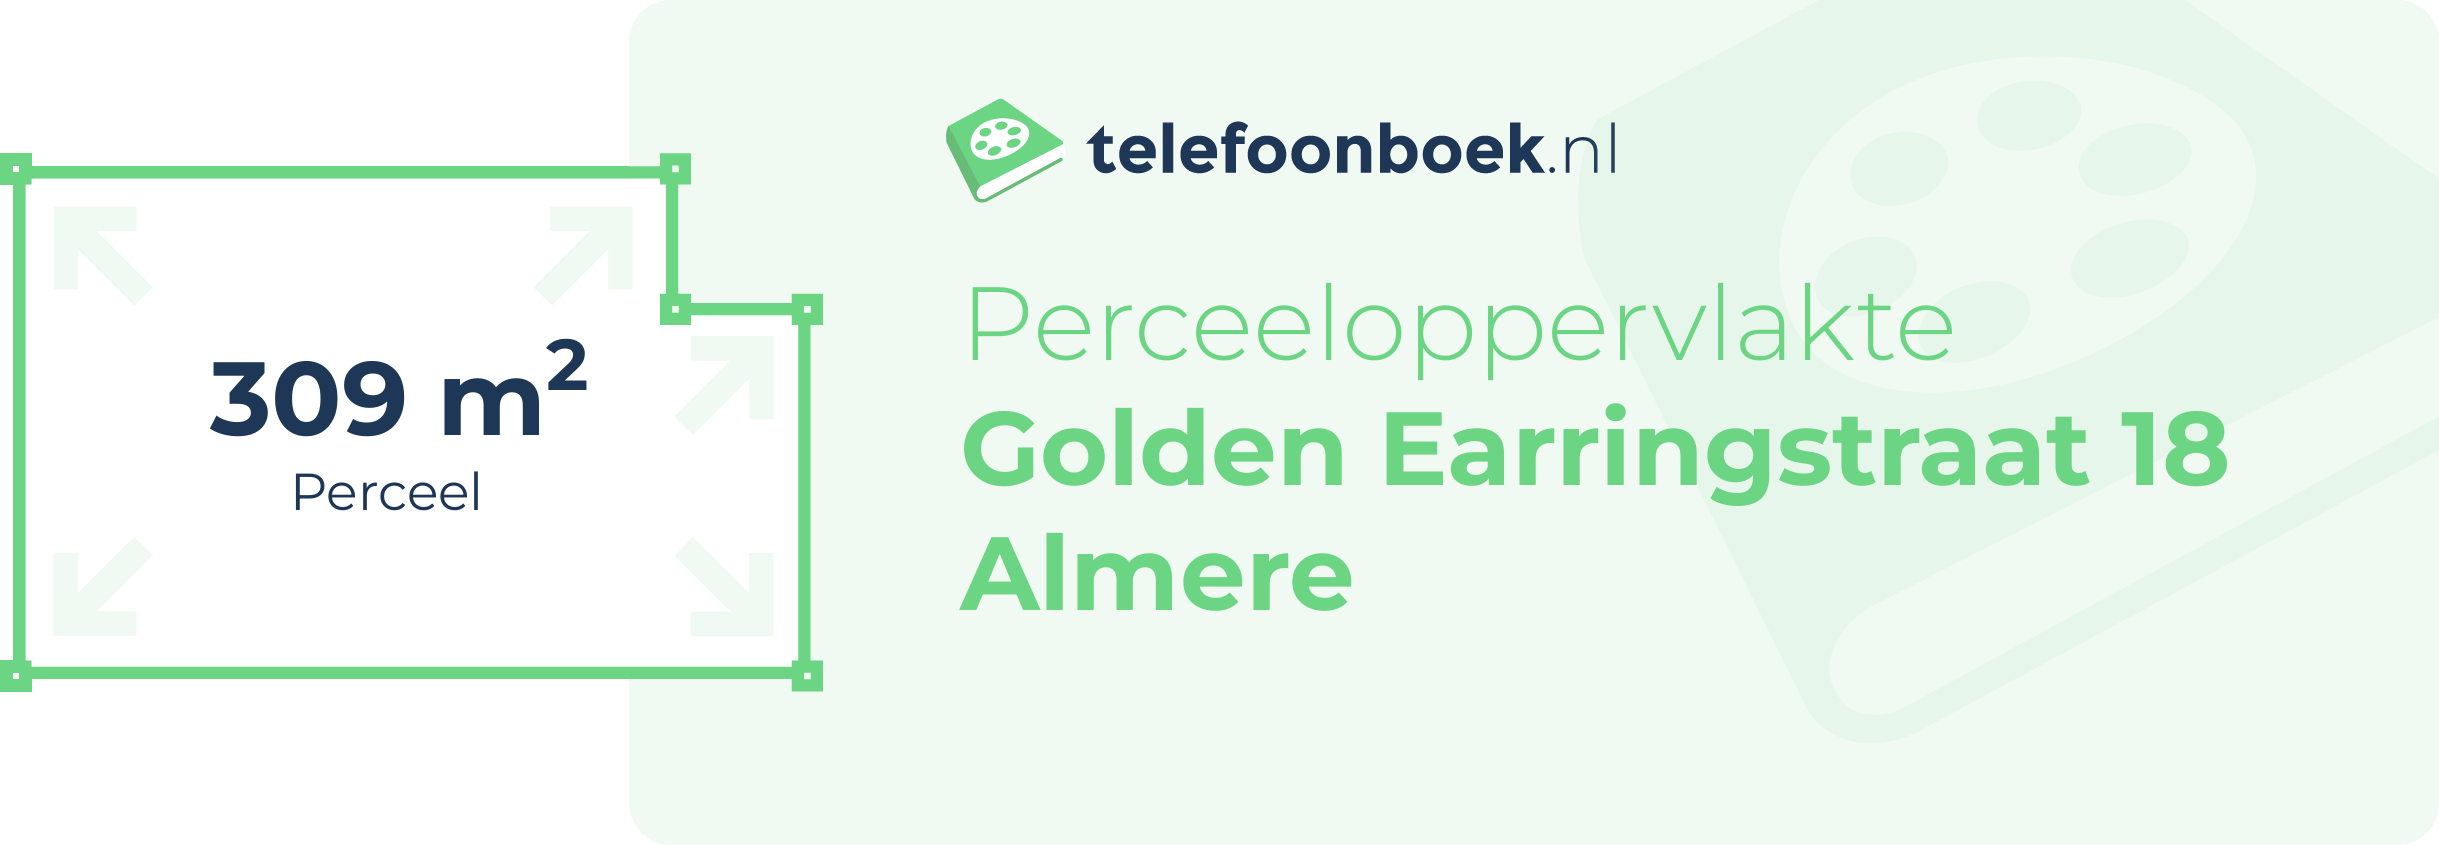 Perceeloppervlakte Golden Earringstraat 18 Almere